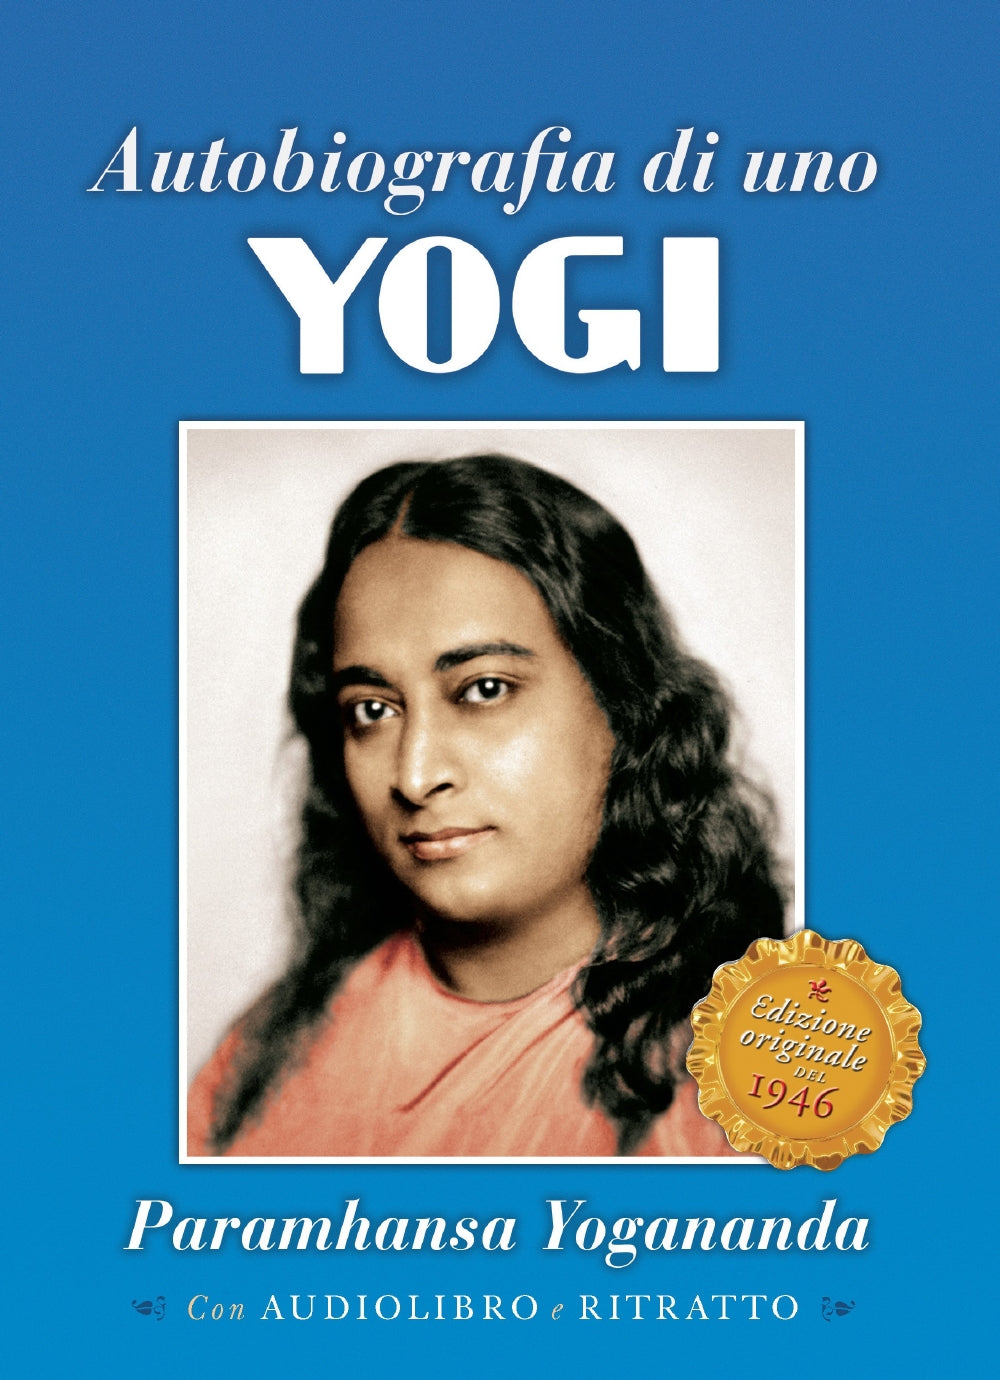 Autobiografia di uno Yogi::Edizione originale del 1946 - Con audiolibro e ritratto